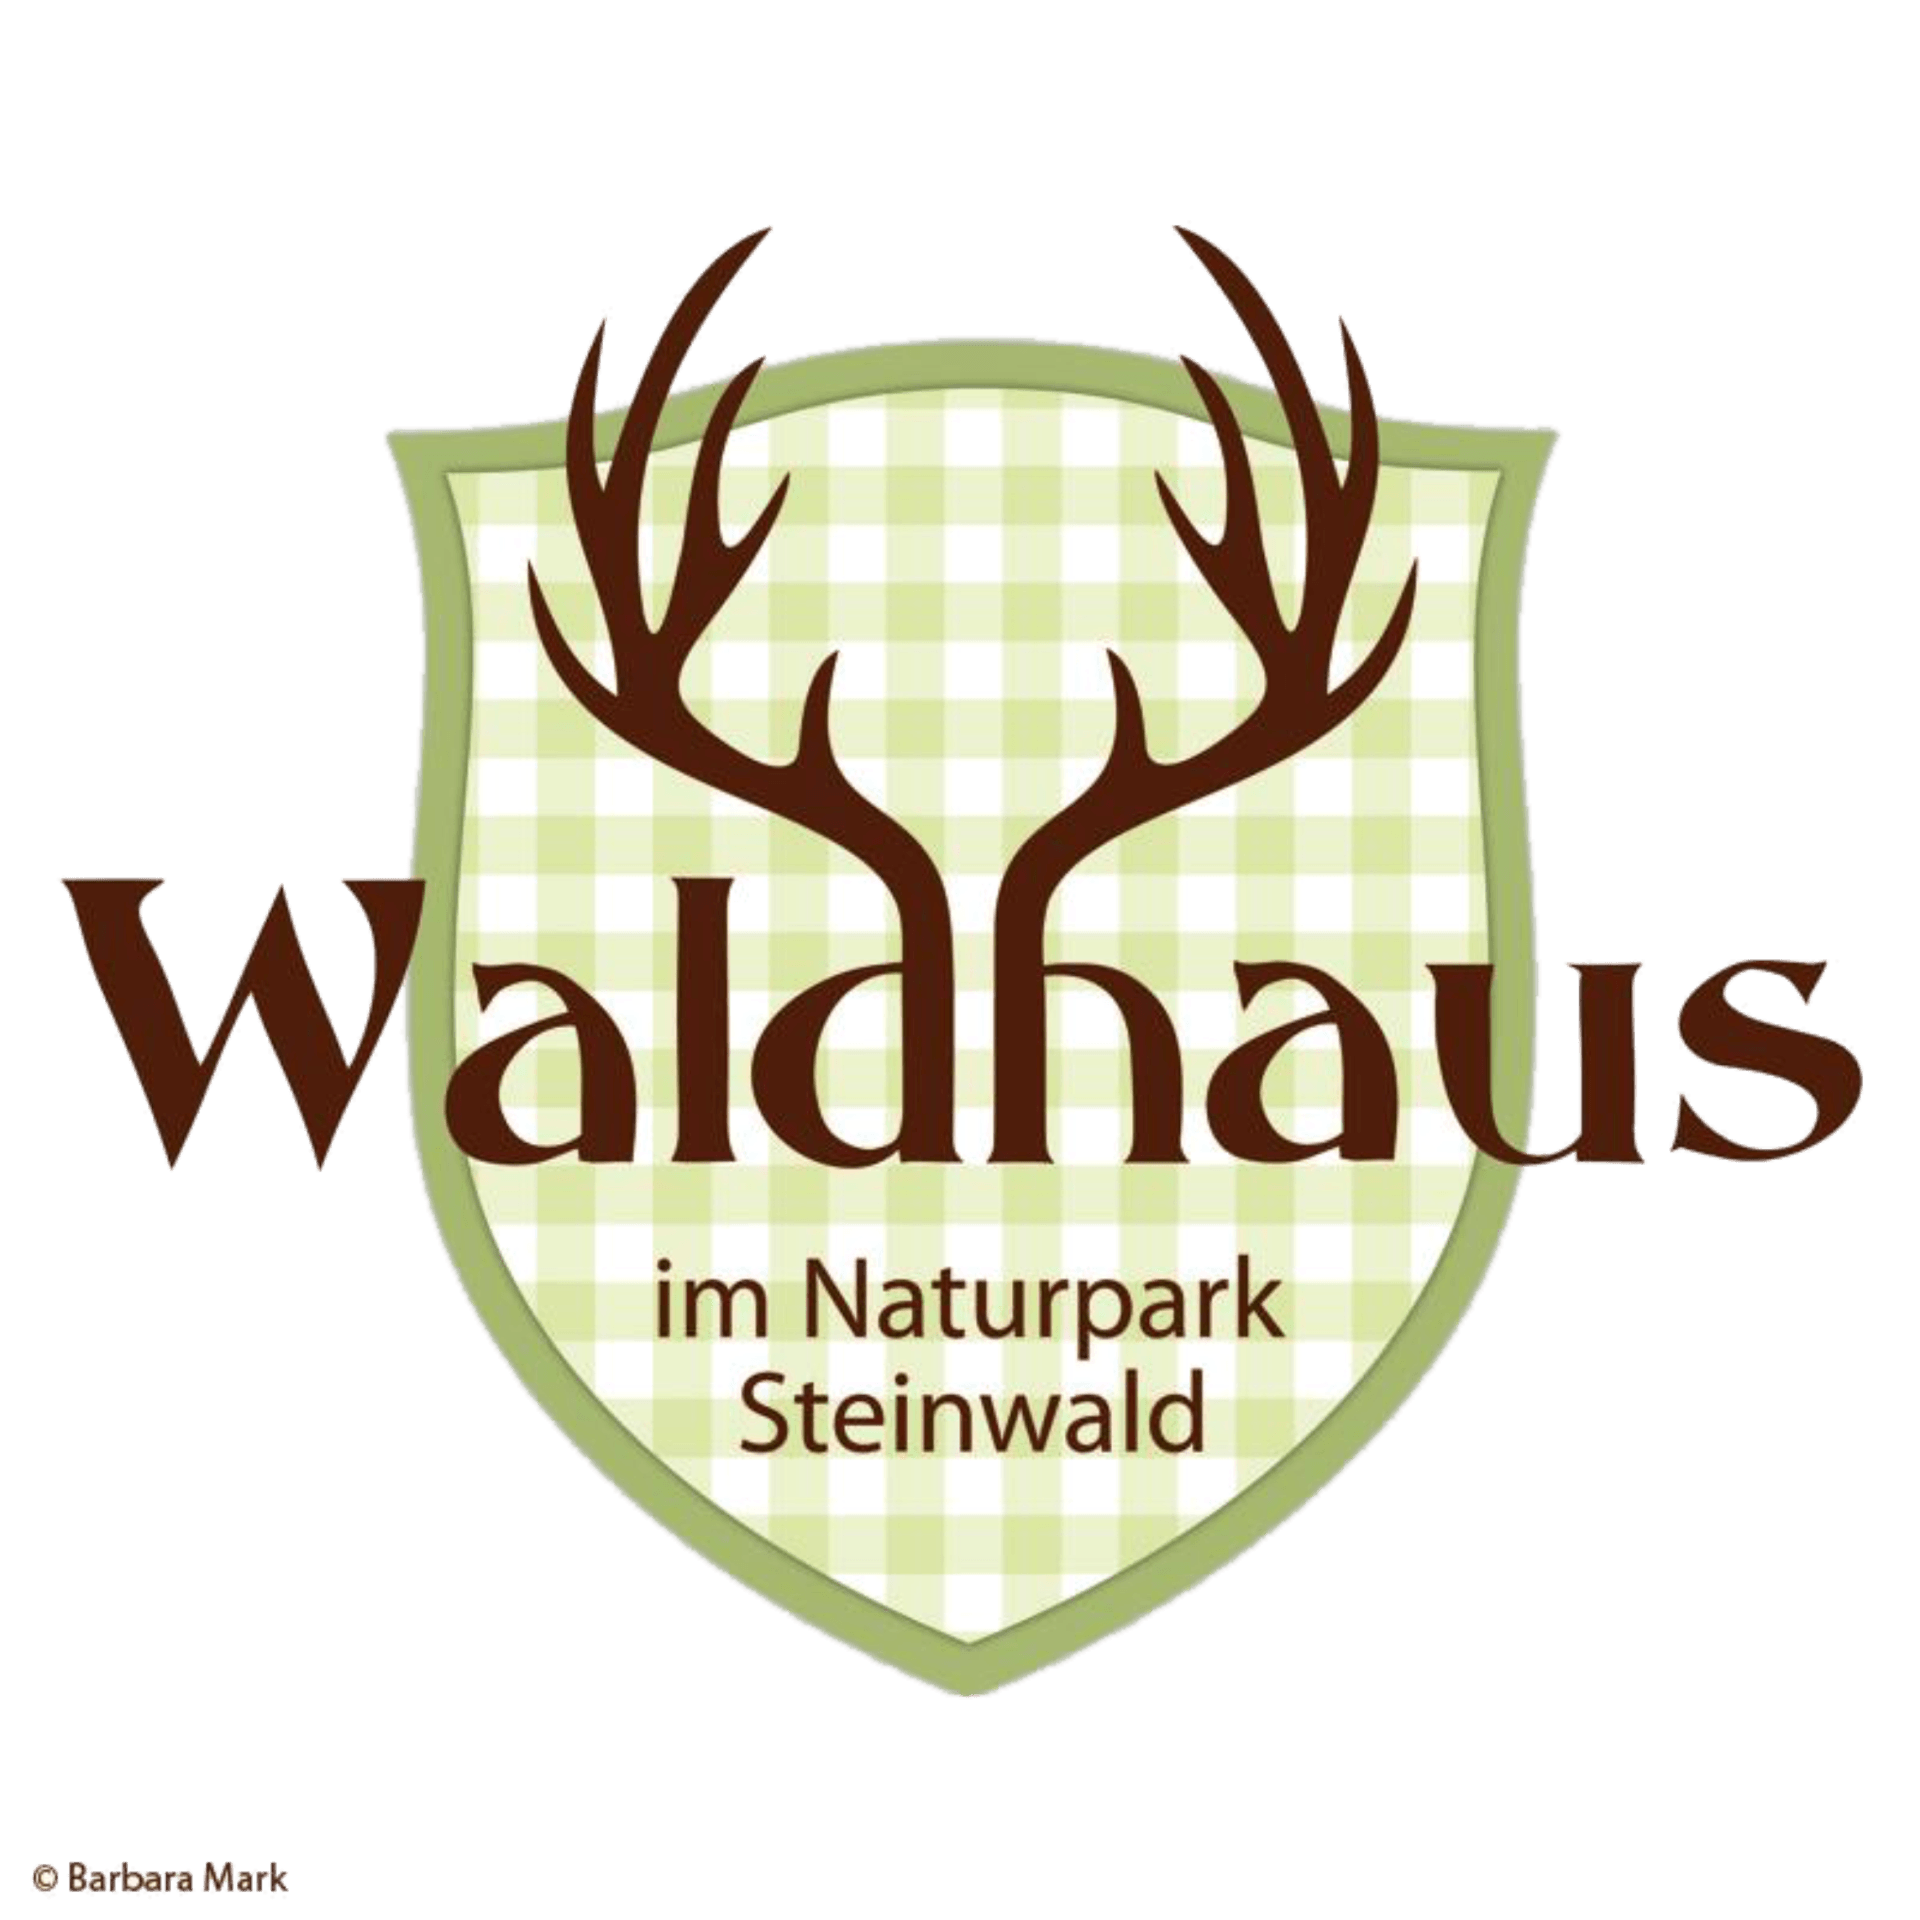 Waldhaus, Naturpark, Steinwald, Steinwald-Allianz, Steinwaldgemeinden, Steinwaldregion